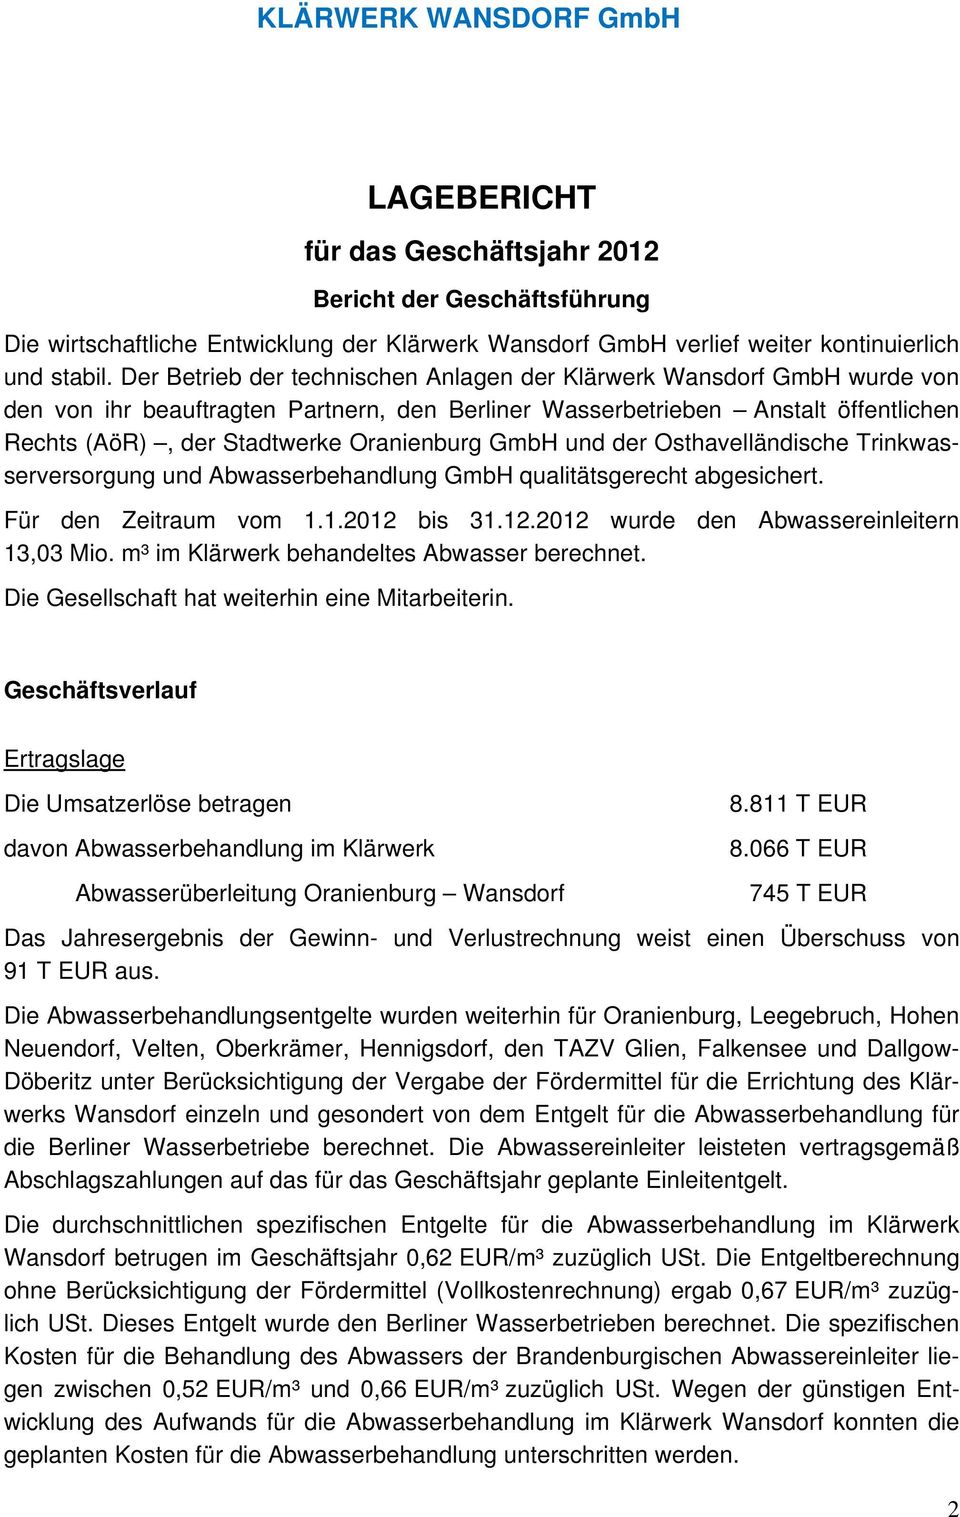 GmbH und der Osthavelländische Trinkwasserversorgung und Abwasserbehandlung GmbH qualitätsgerecht abgesichert. Für den Zeitraum vom 1.1.2012 bis 31.12.2012 wurde den Abwassereinleitern 13,03 Mio.